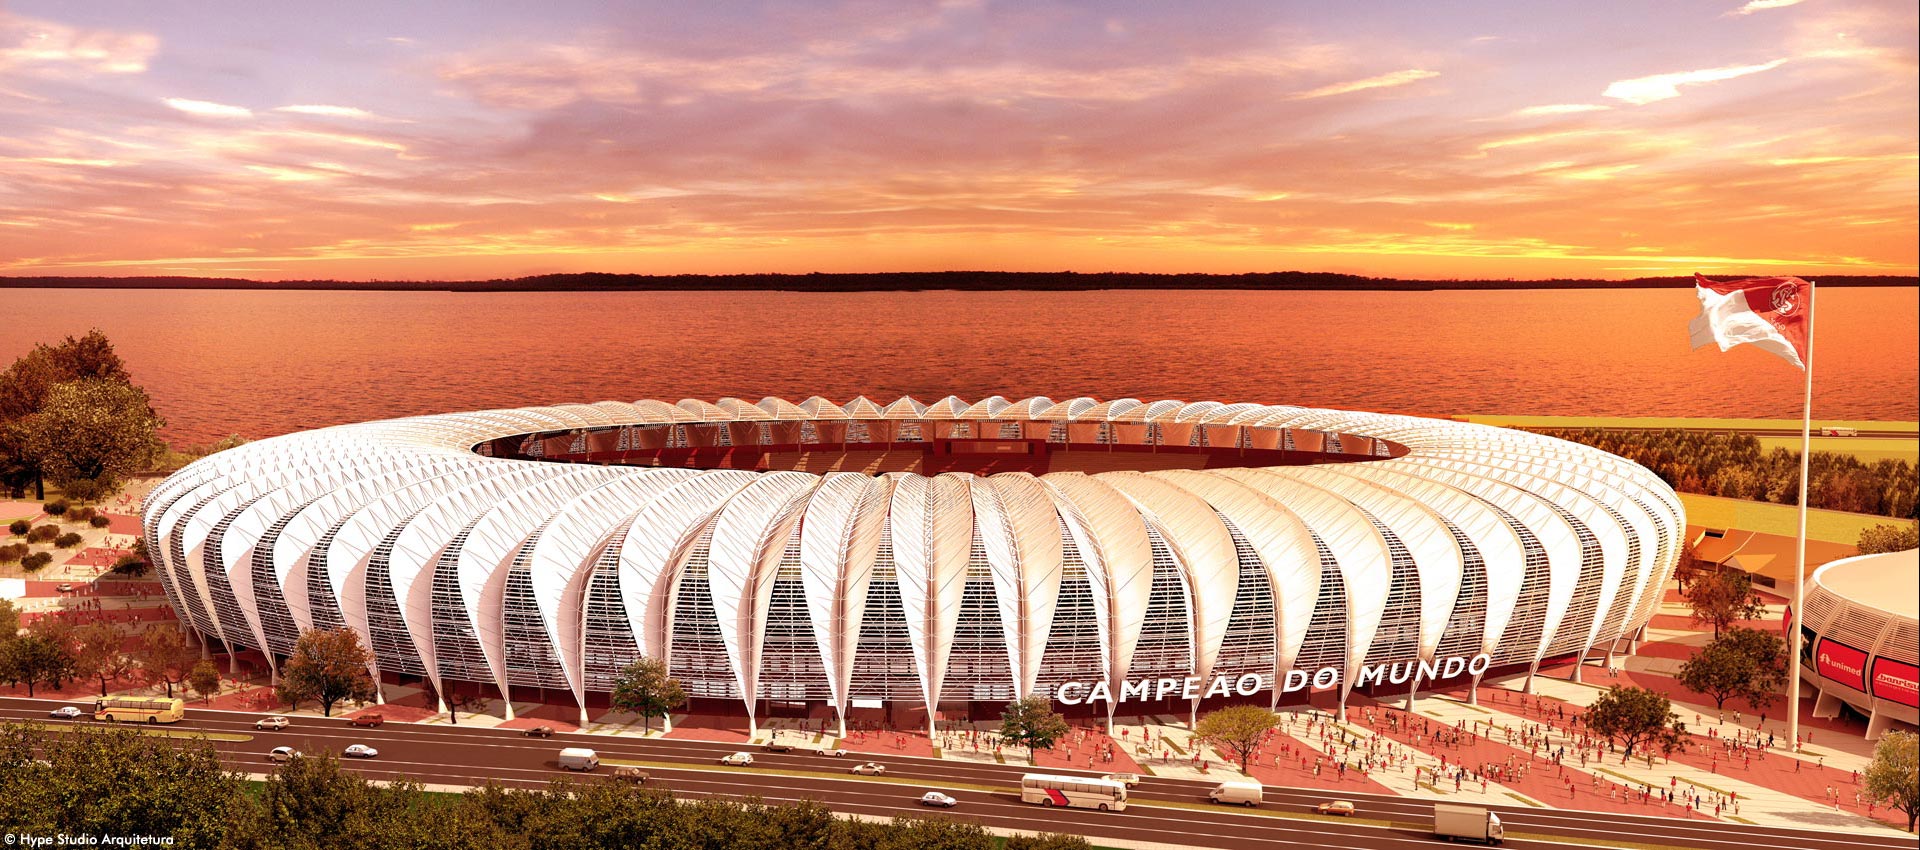 Image result for Estádio Beira-Rio logo